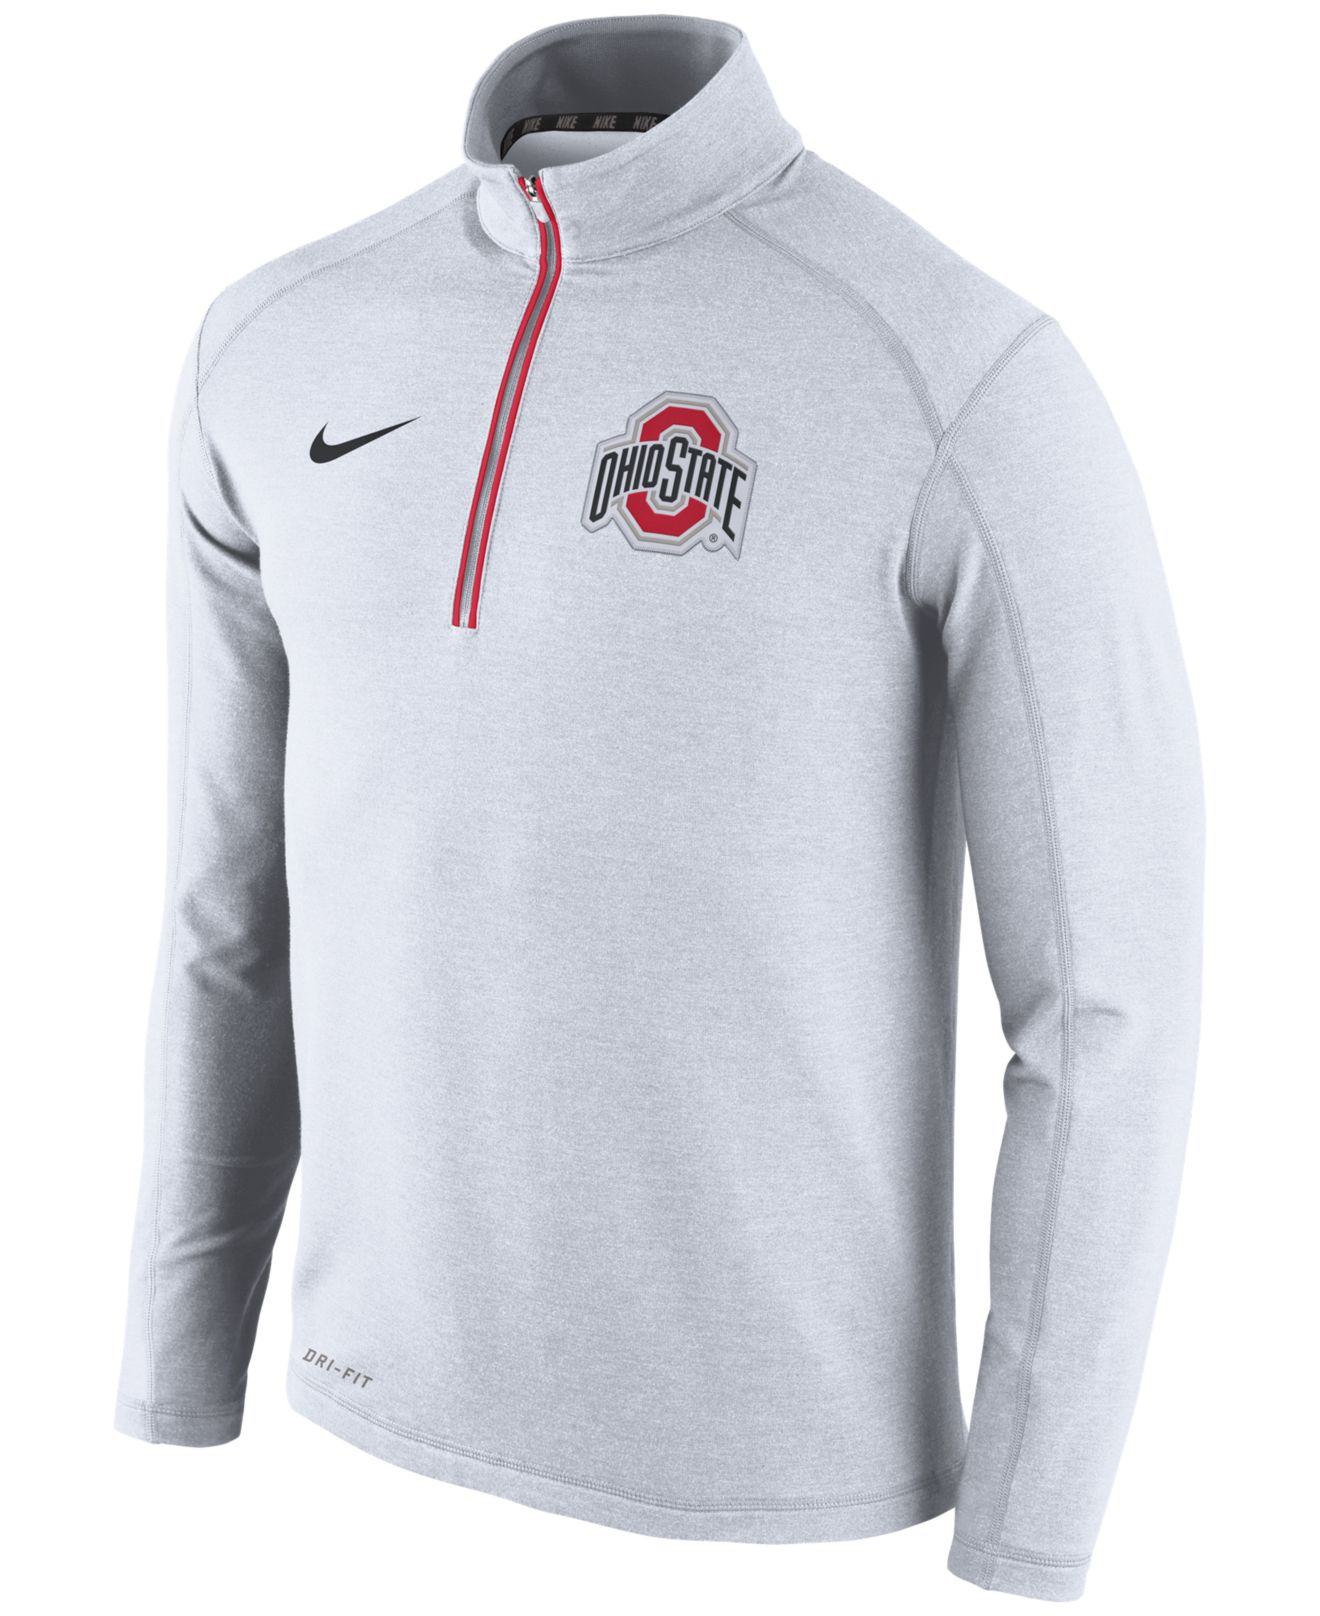 Buy > men's ohio state sweatshirt > in stock